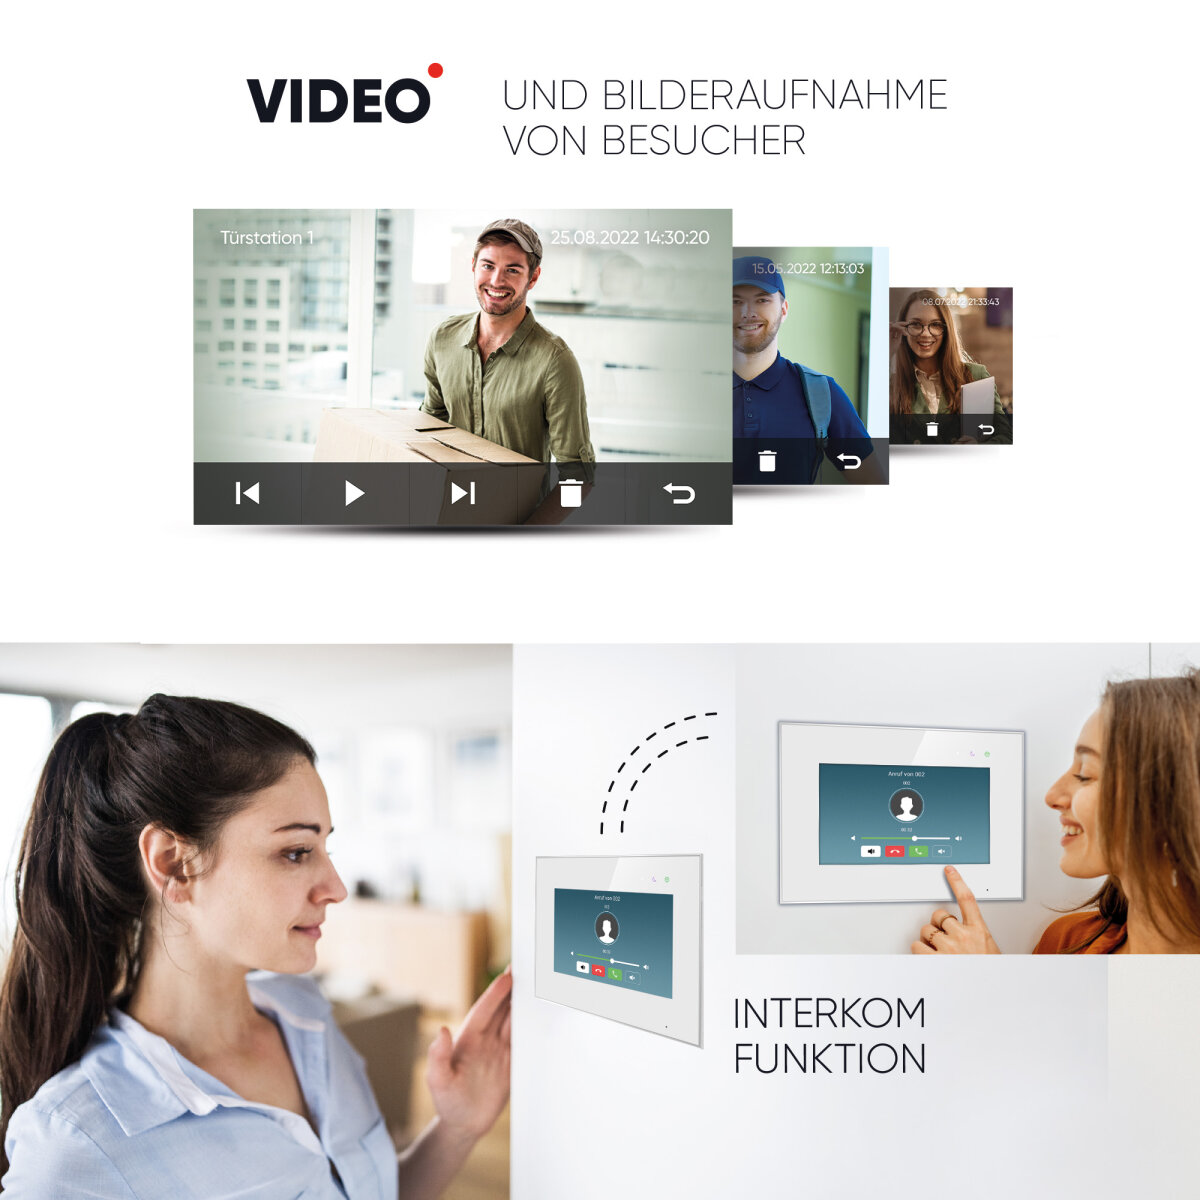 HD Video T&uuml;rsprechanlage mit Smartphone App f&uuml;r 1 Familienhaus, 1x Monitor, Balter EVO HD WLAN